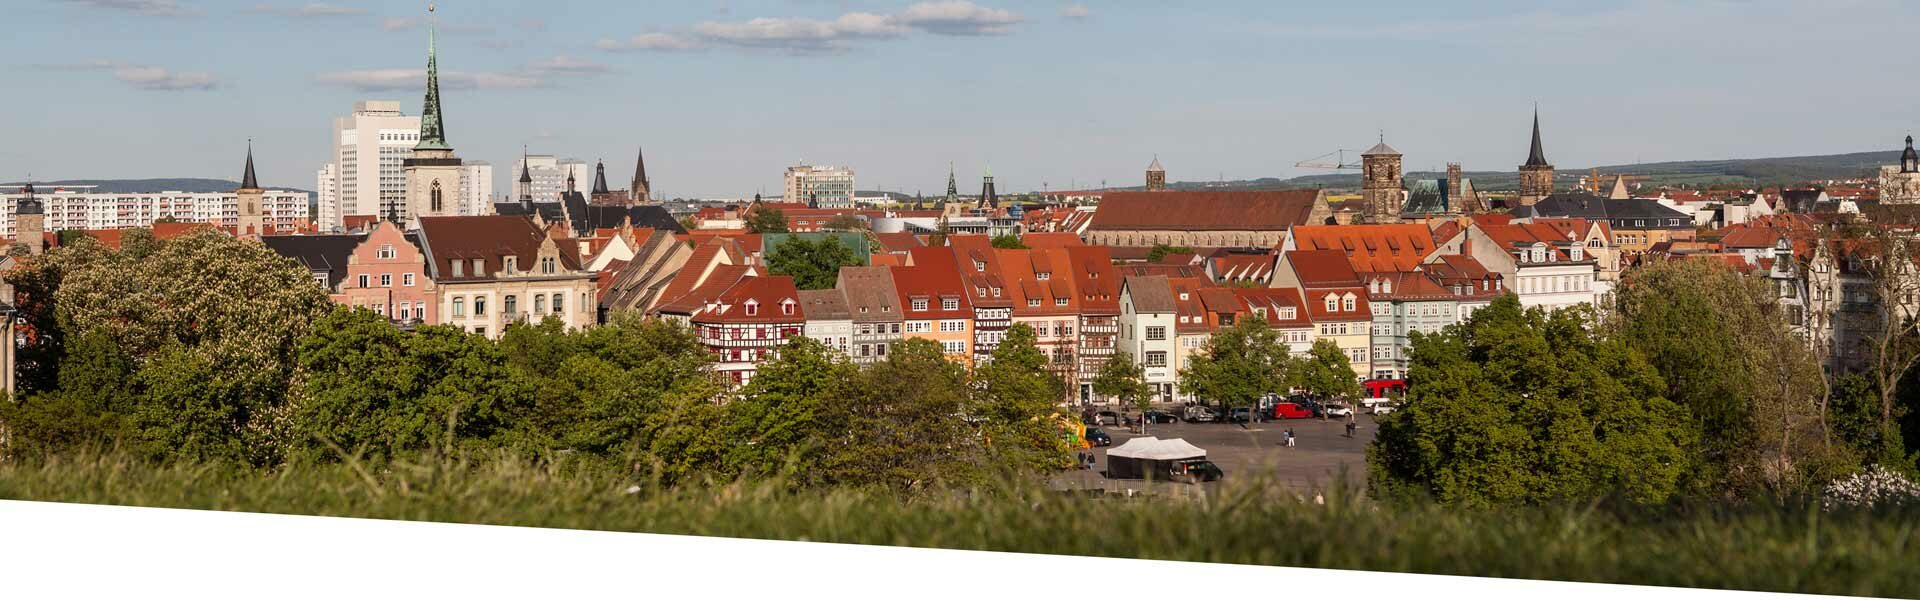 Bild der Innenstadt von Erfurt rund um den Domplatz